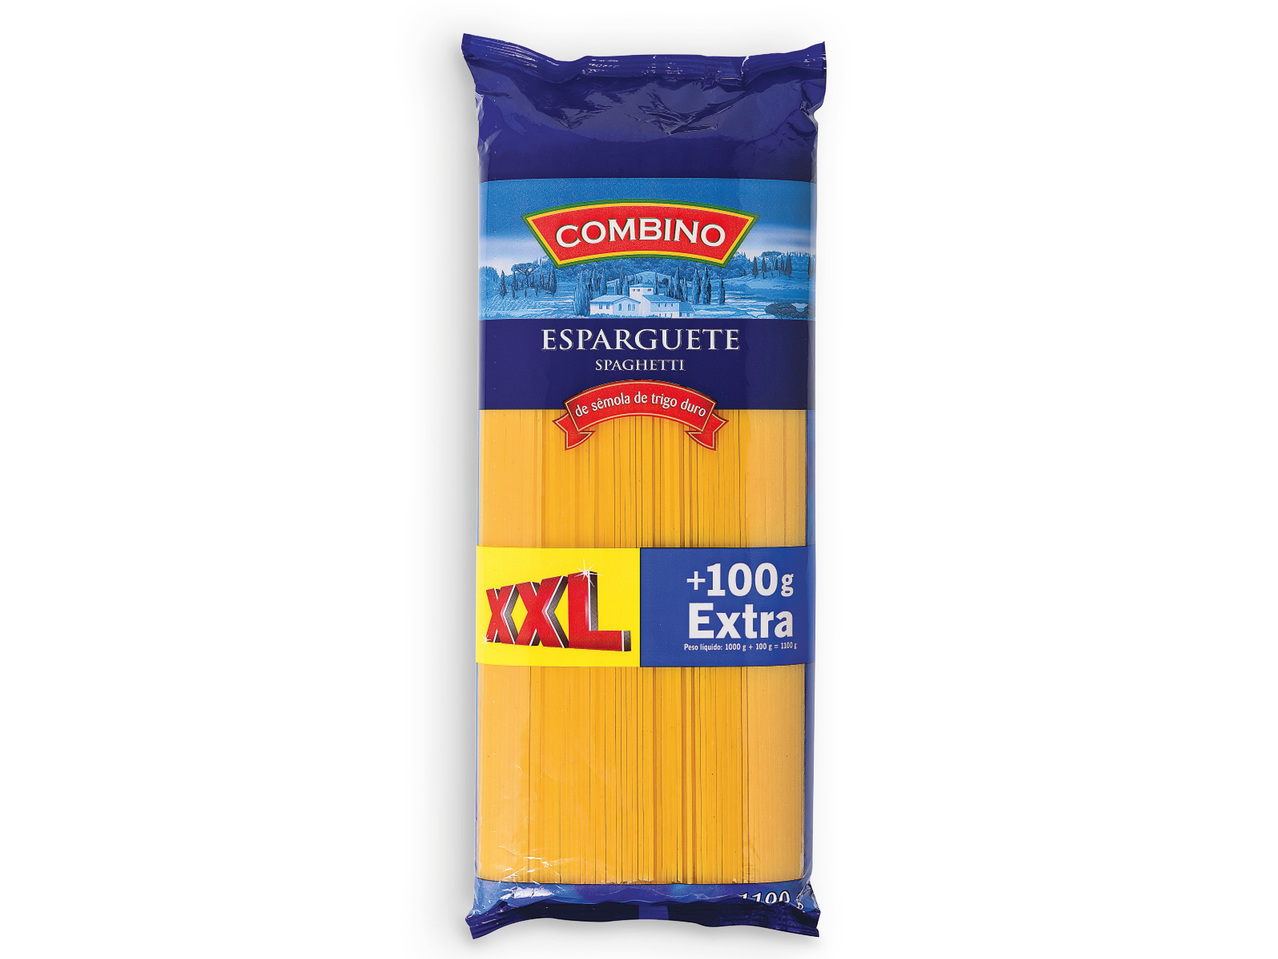 COMBINO(R) Esparguete